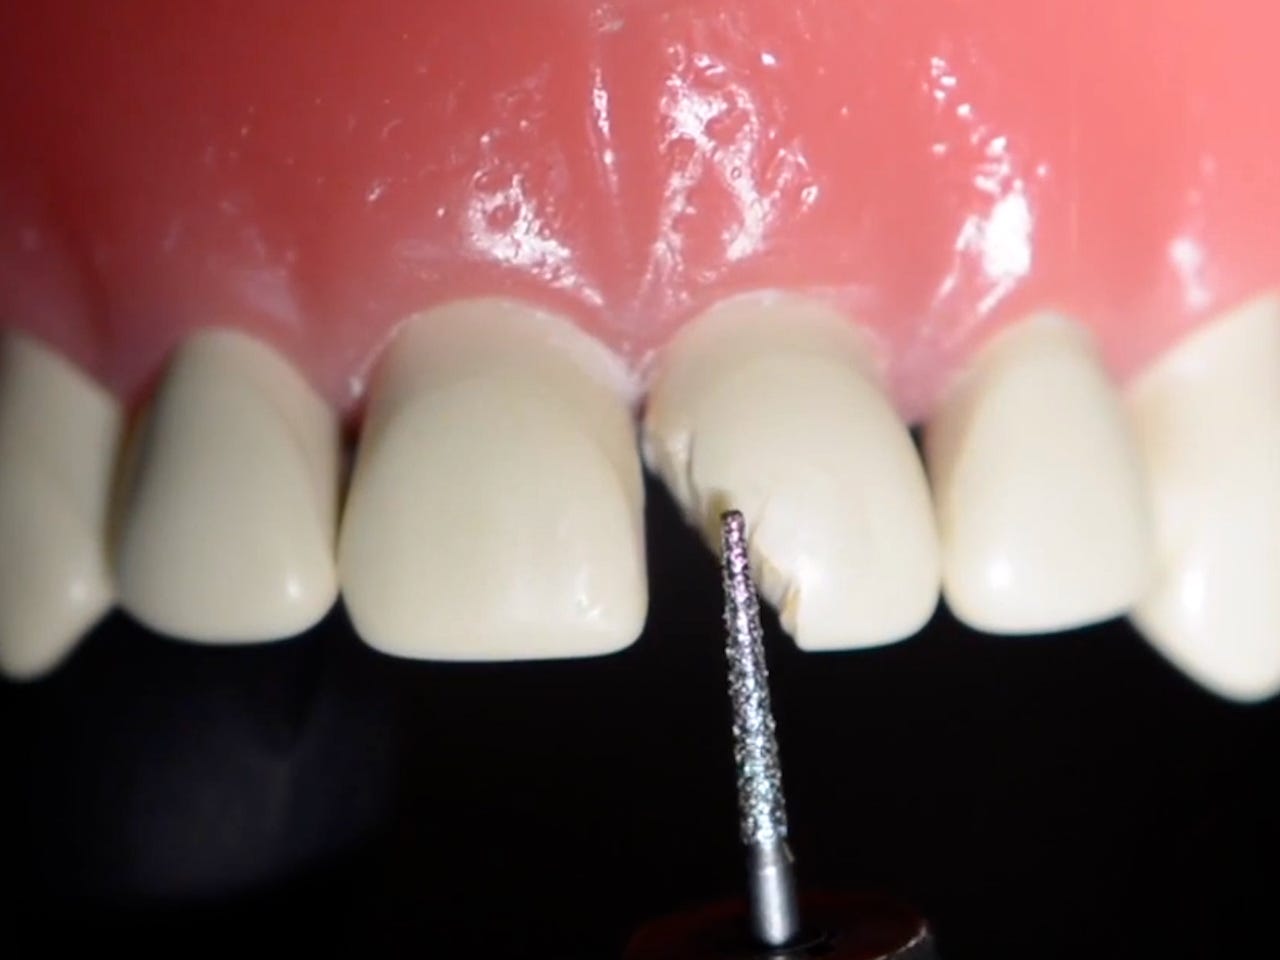 Ein Standbild aus einem Video zeigt ein künstliches Gebiss.  Einer der Zähne ist deutlich abgebrochen